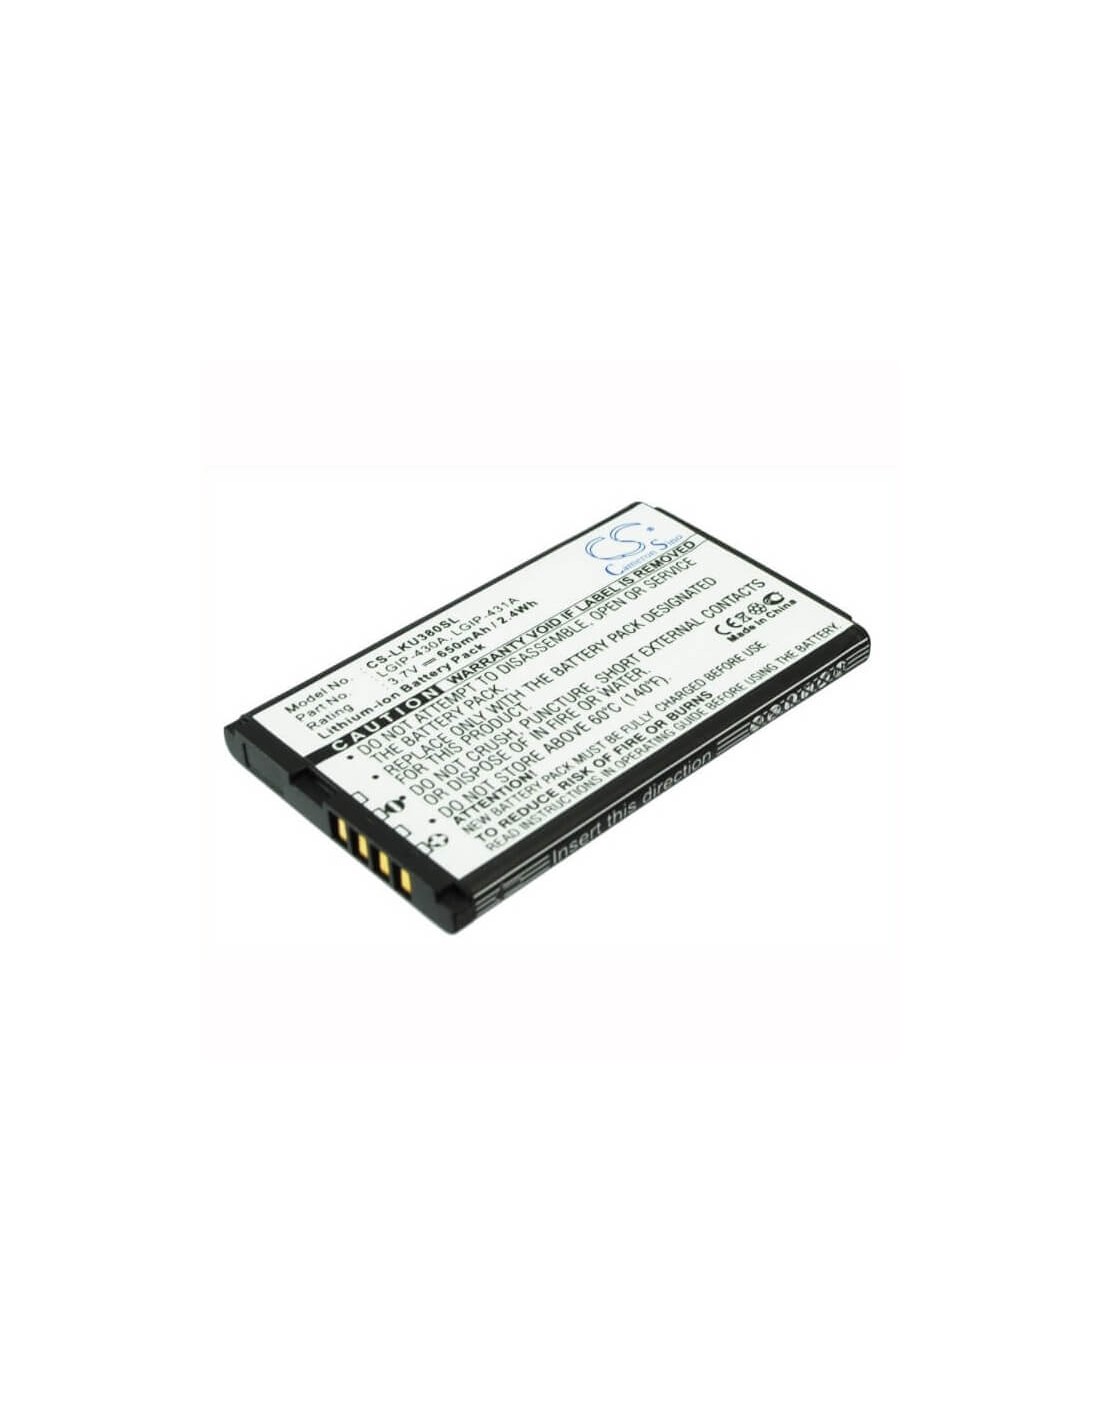 Battery for LG KU380, KP100, CE110 3.7V, 650mAh - 2.41Wh